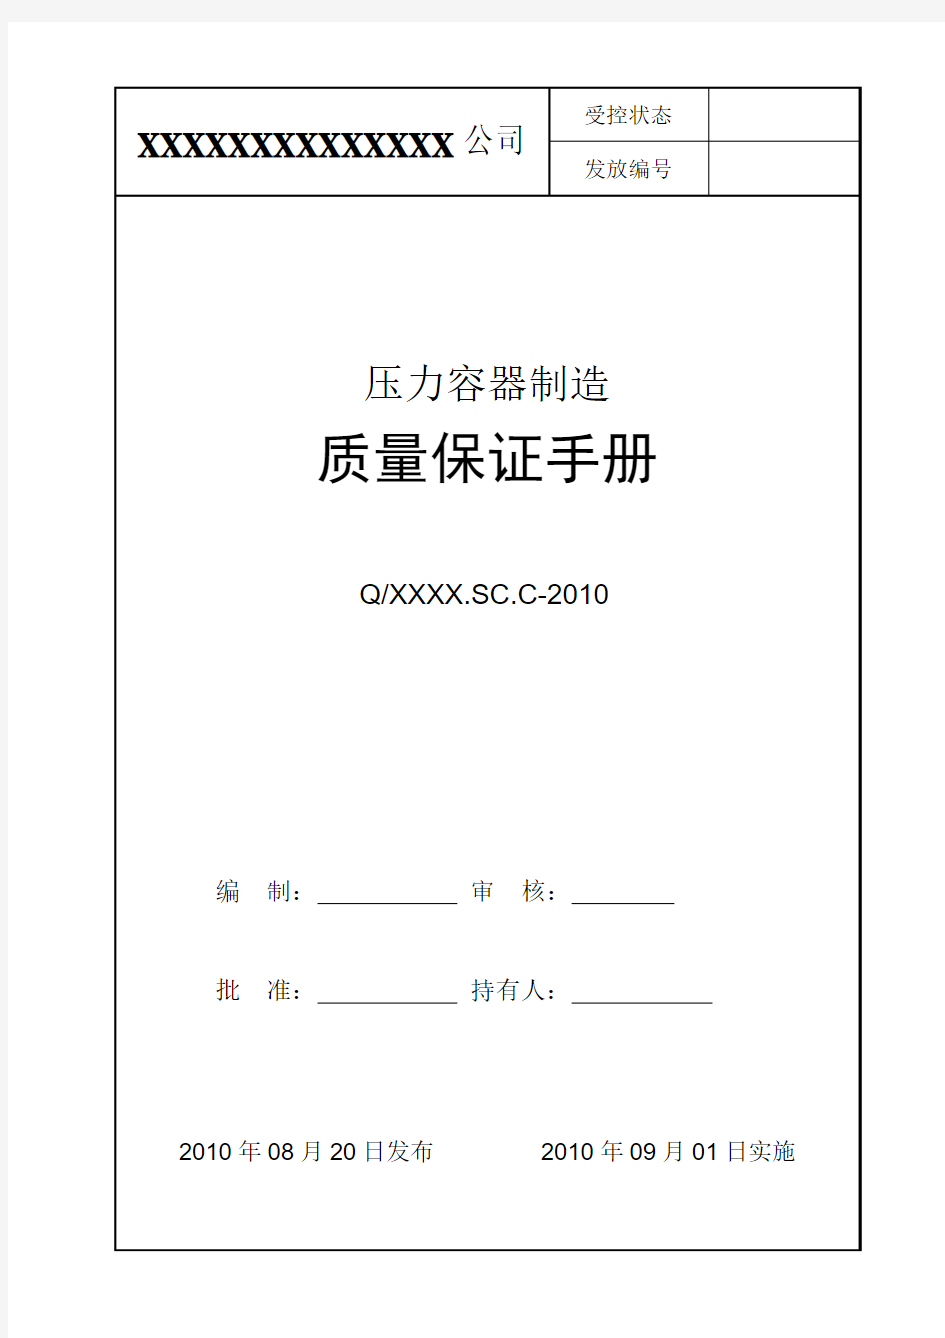 压力容器质量保证手册-2010版